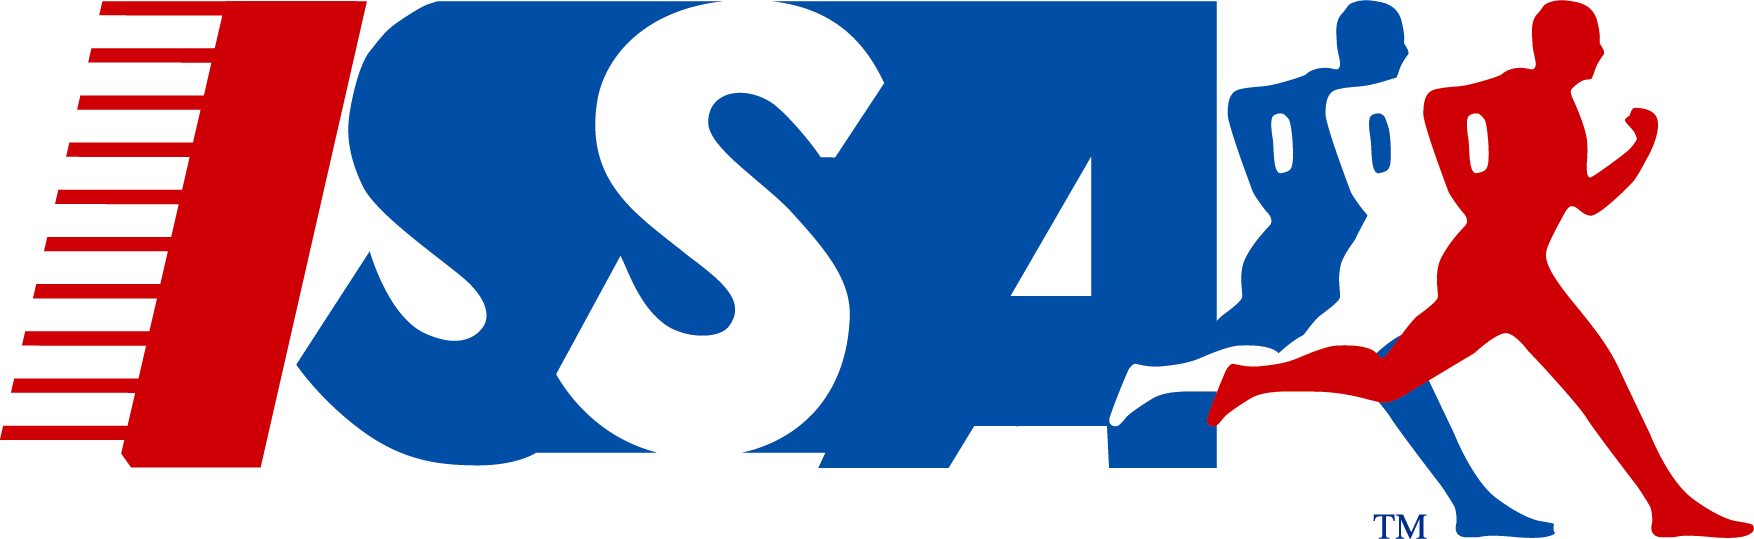 Issa Logo - Issa Logos